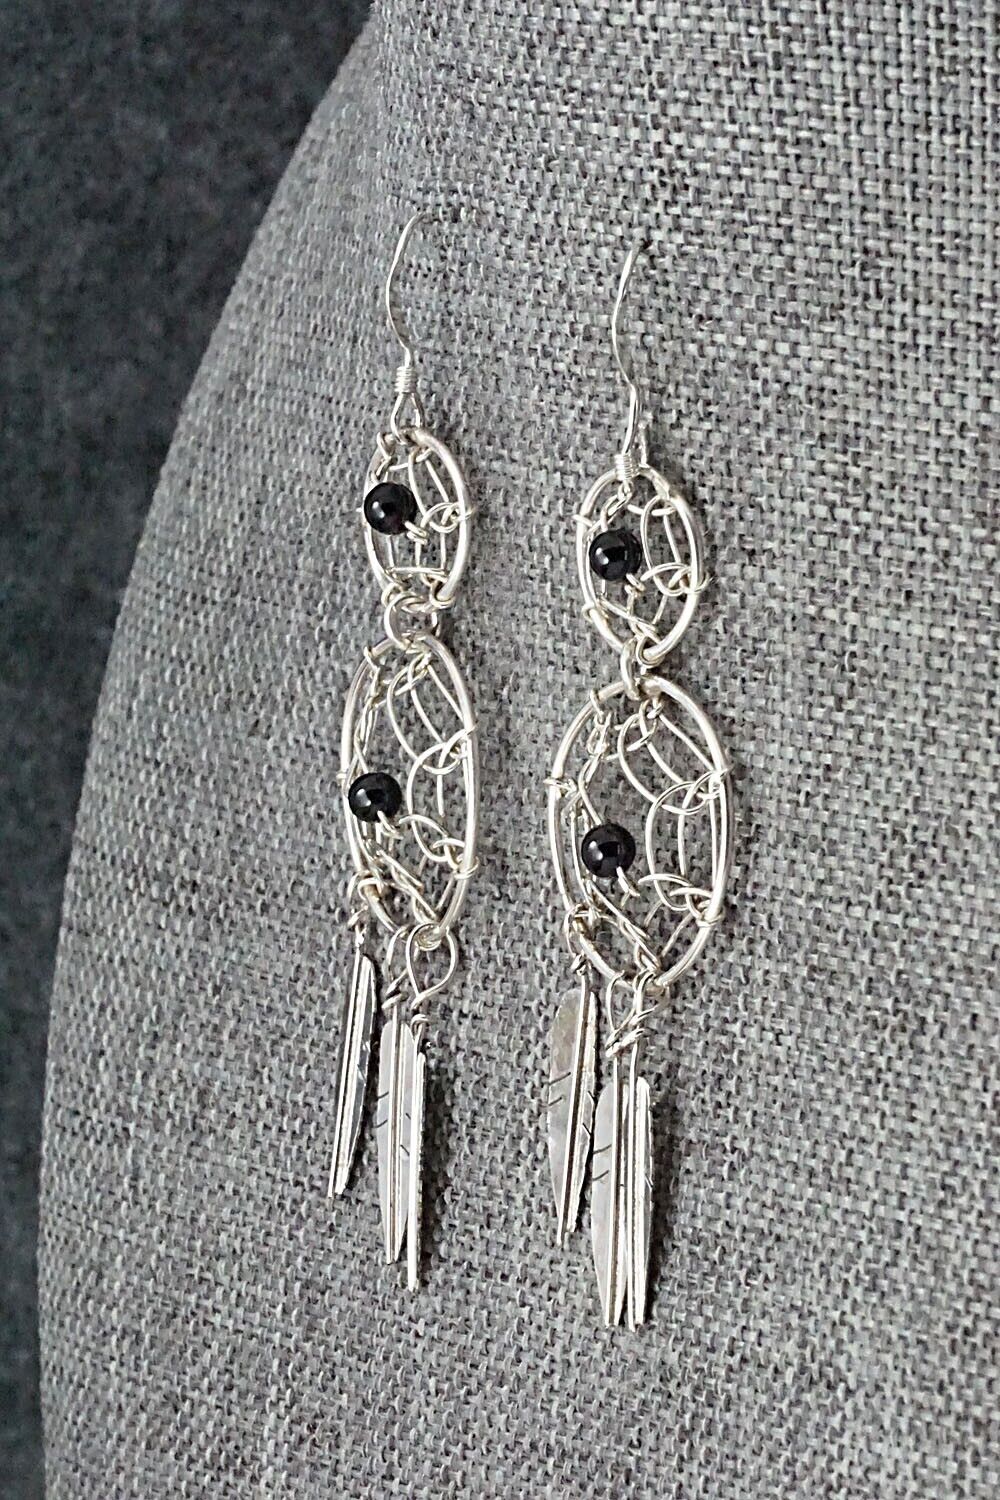 Onyx & Sterling Silver Earrings - Lorenzo Arviso Jr.